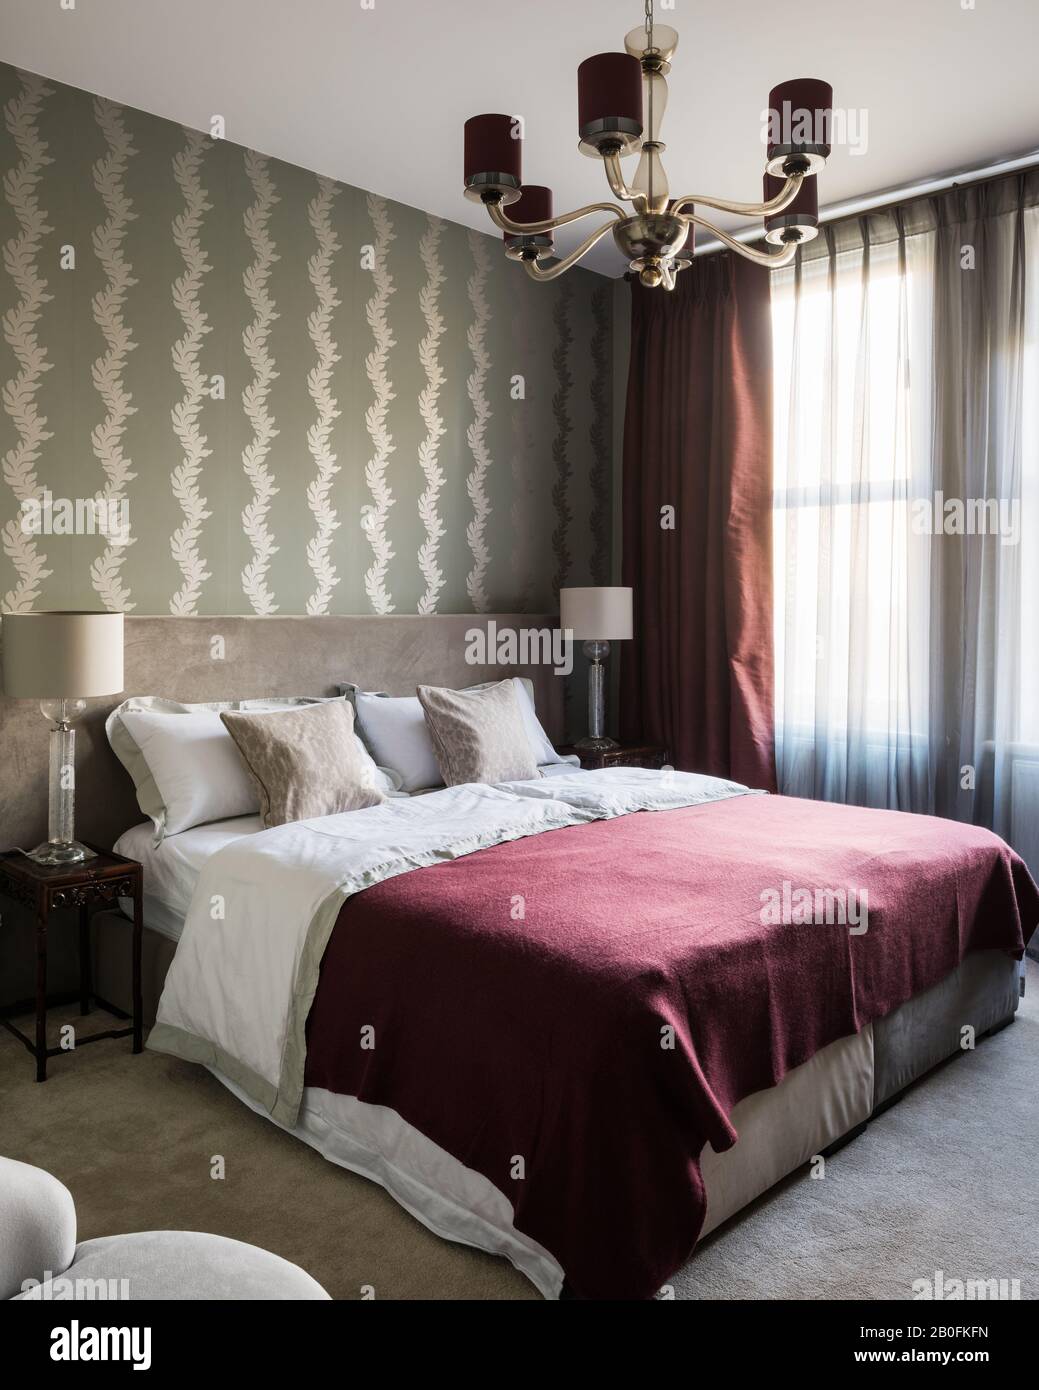 Couverture bordeaux sur lit double avec éclairage vintage et rideaux fermés Banque D'Images